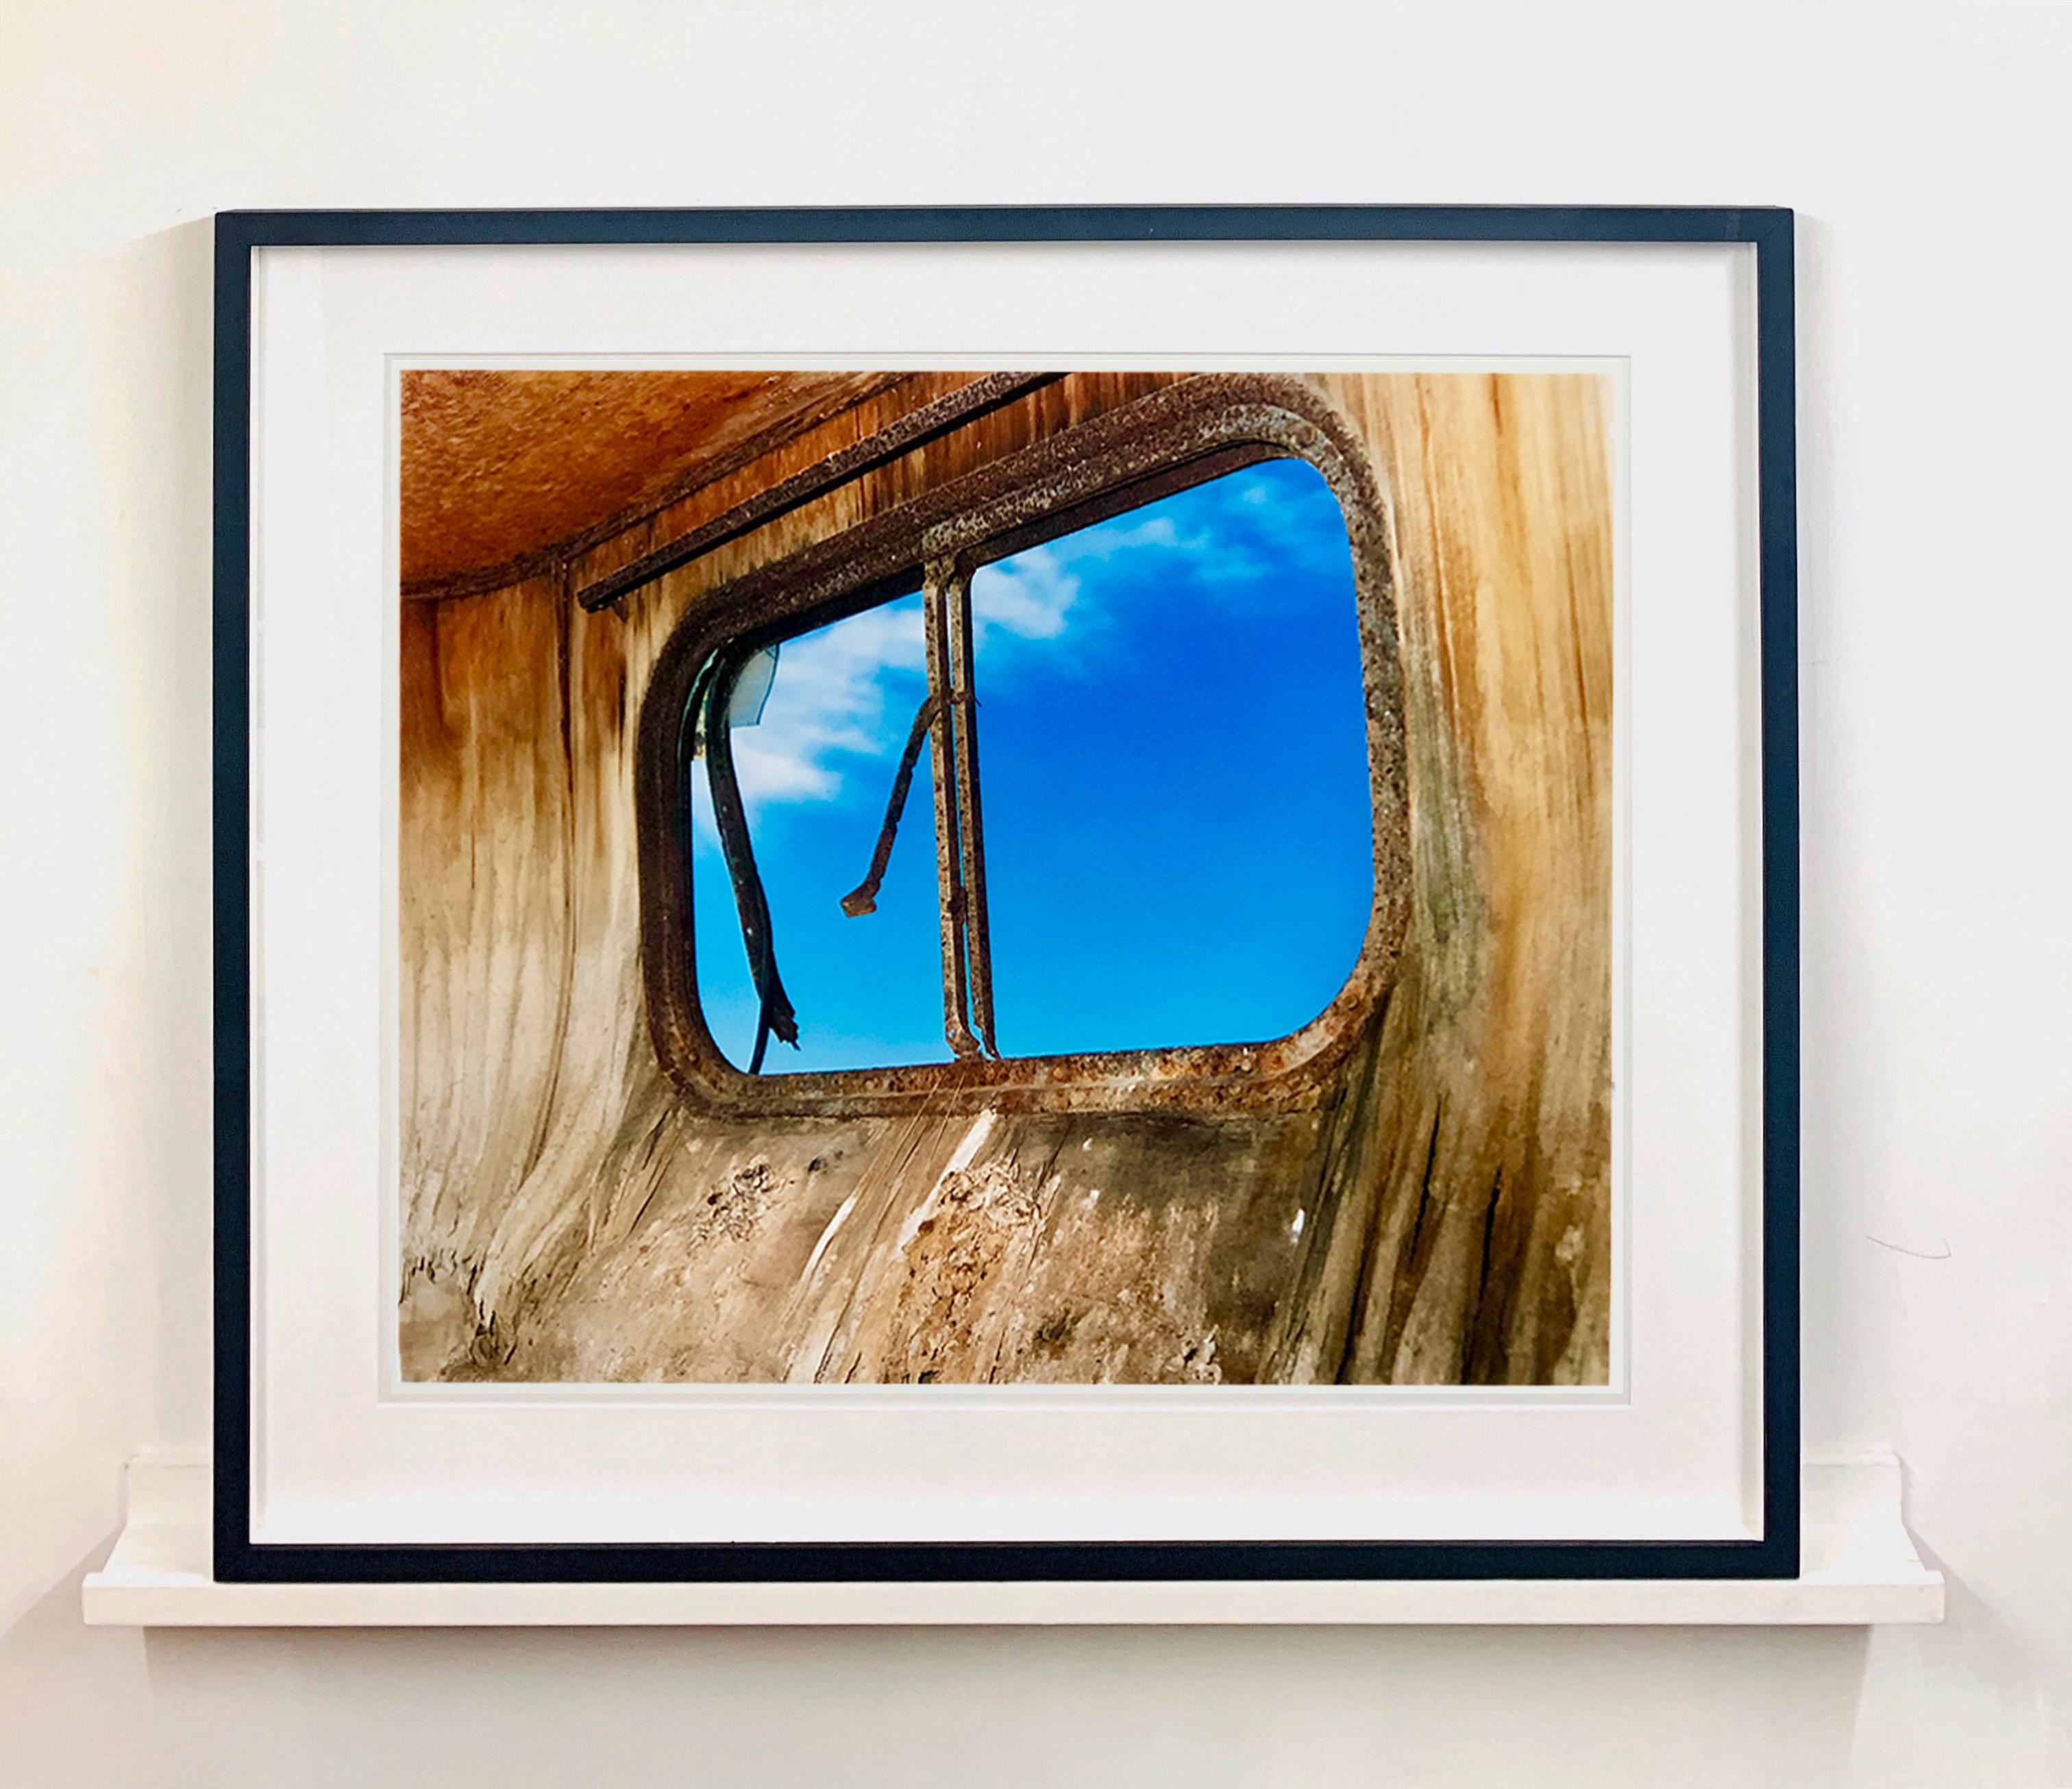 Trailerfenster, Bombay Beach, Salton Sea, Kalifornien (Braun), Landscape Print, von Richard Heeps